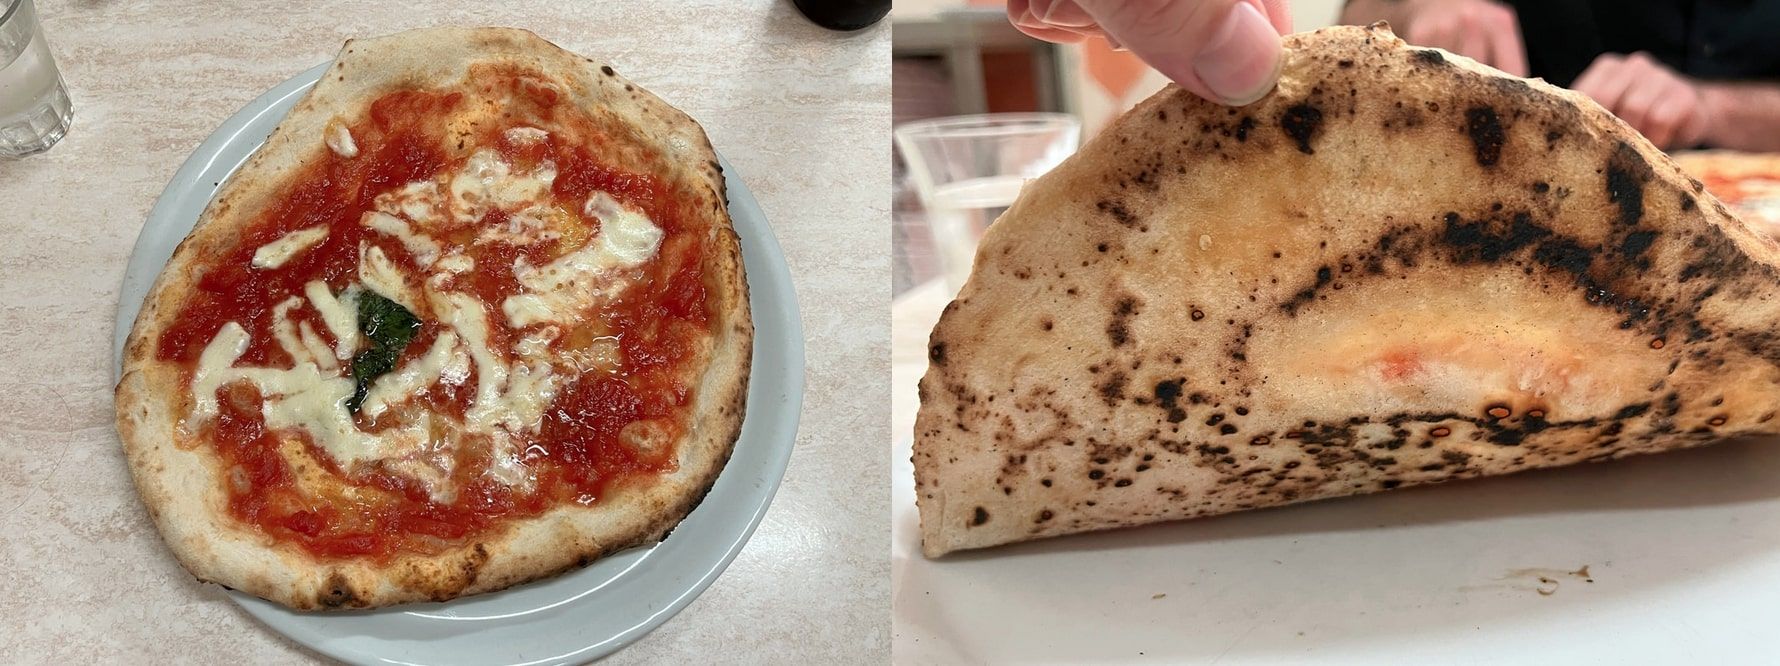 Pizza Priggiobo
